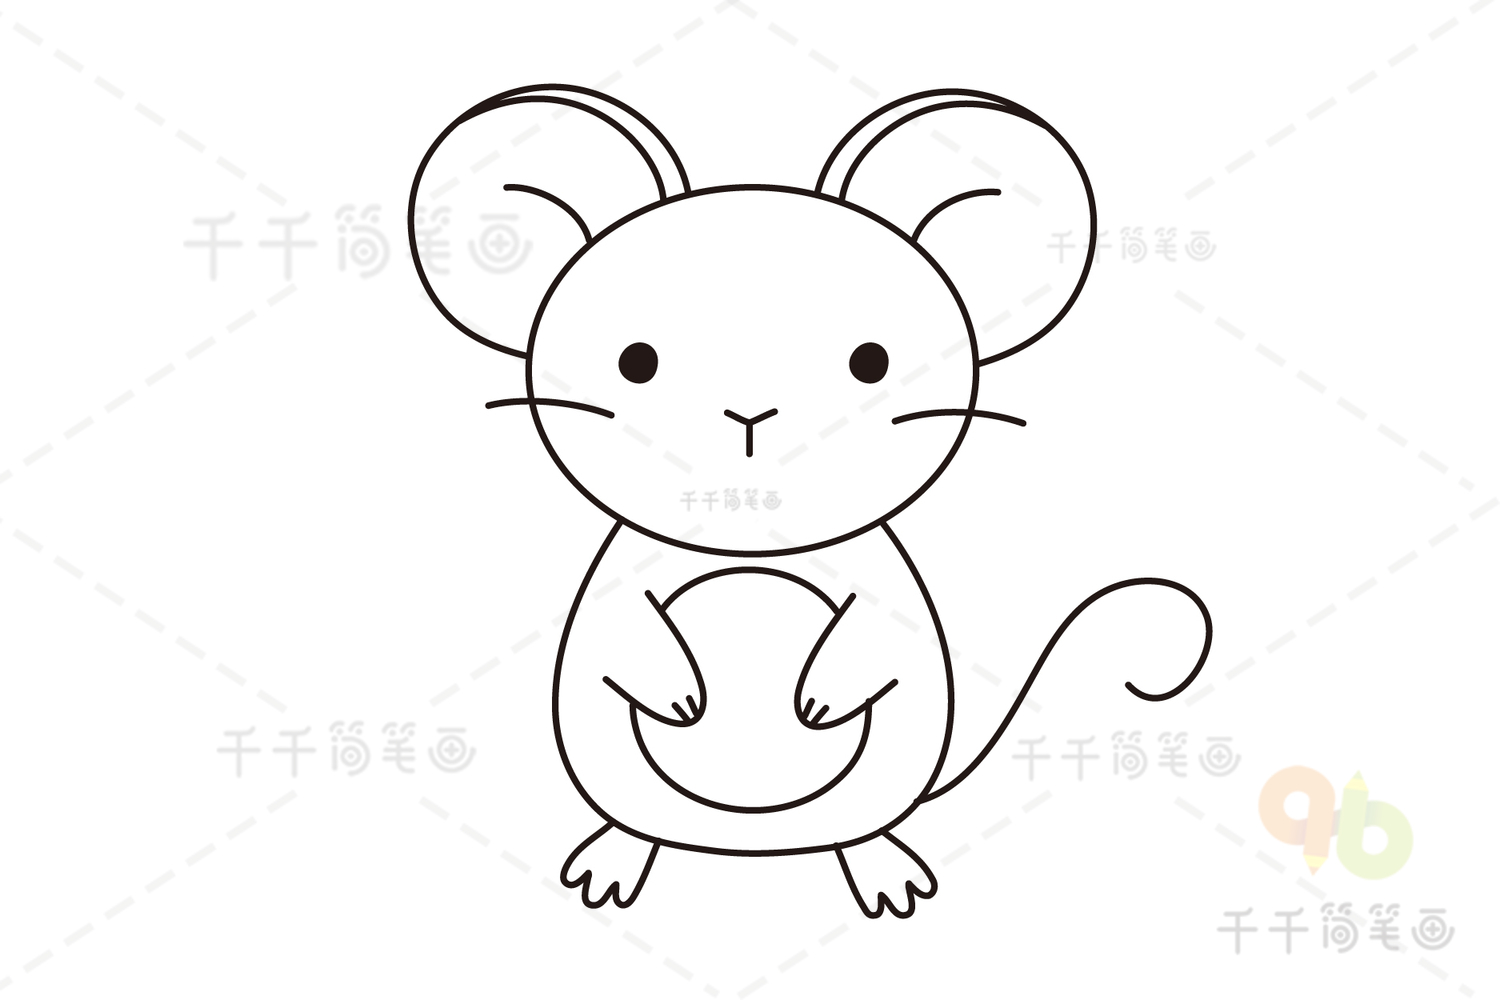 老鼠的画法可爱图片